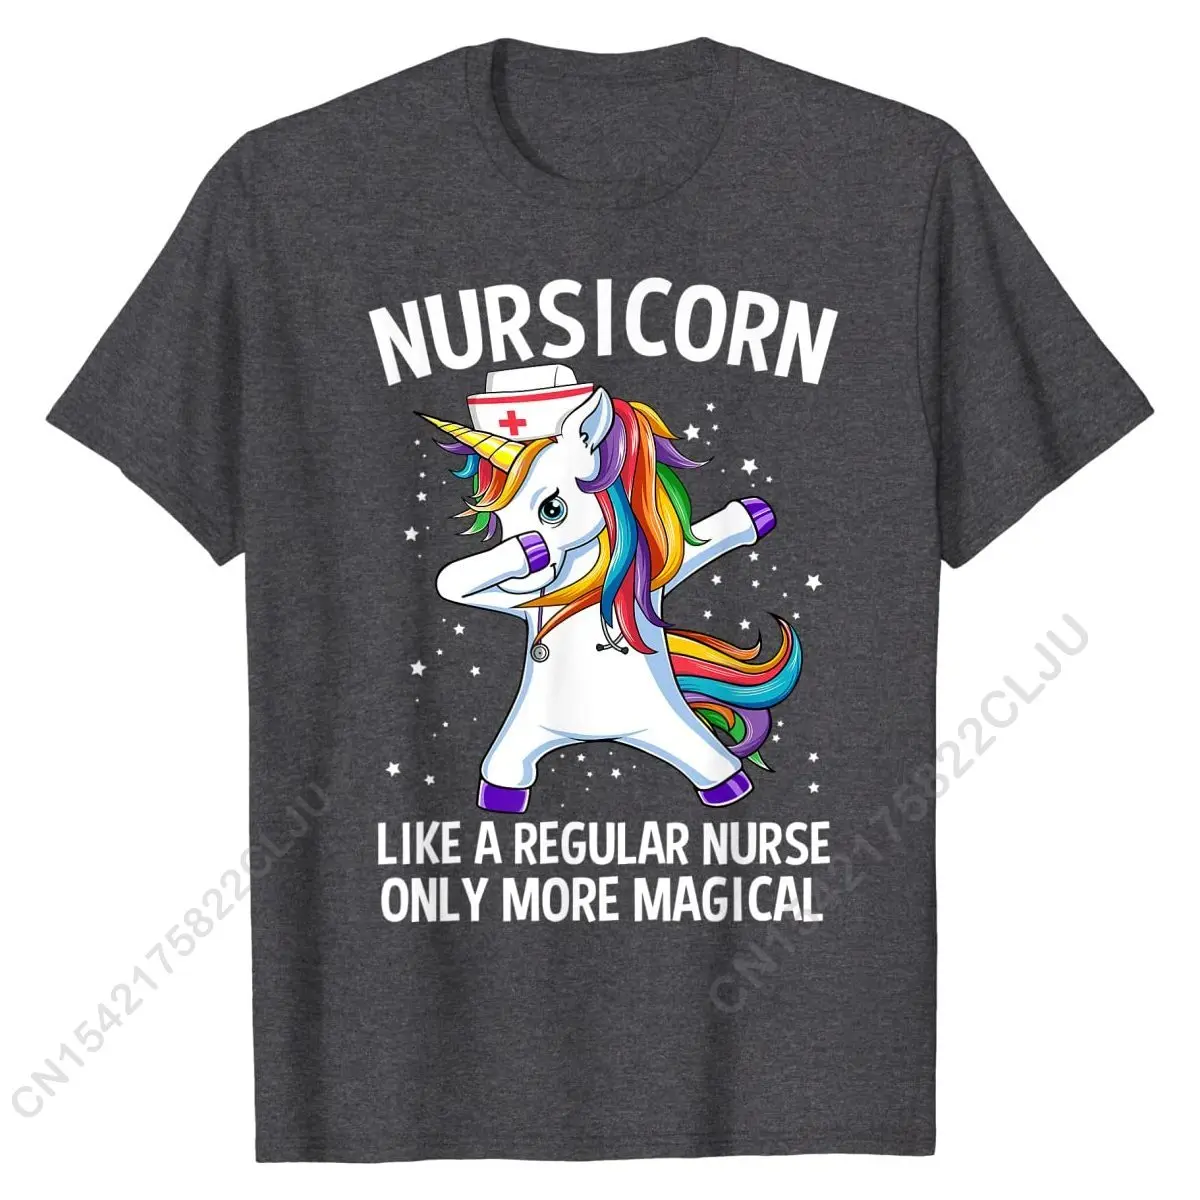 Вытирающий Единорог Nursicorn, Забавная футболка медсестры, футболки, Повседневные хлопковые мужские футболки, дизайн - 2